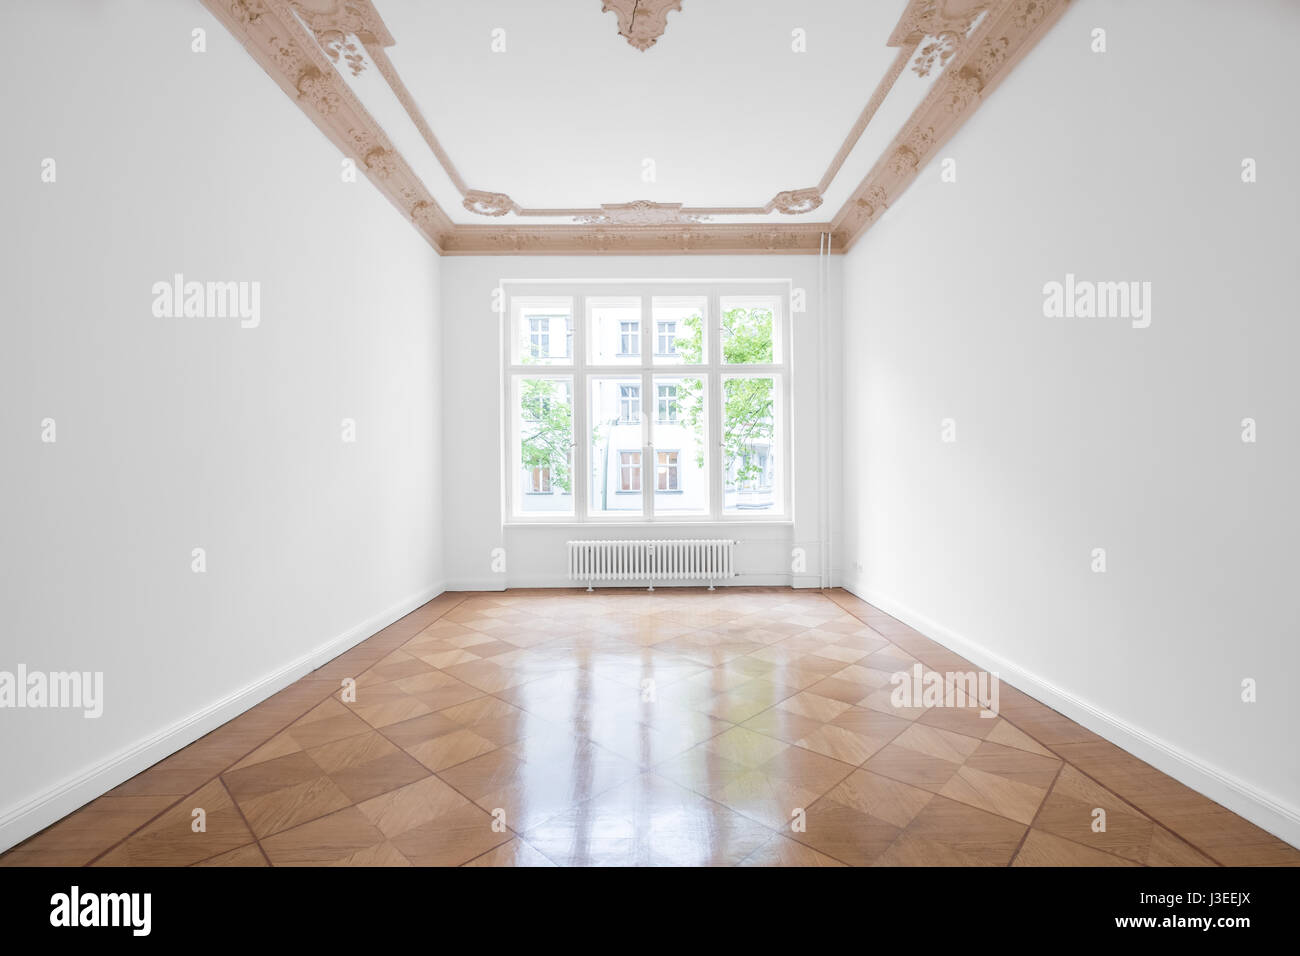 Salle vide avec parquet et plafond en stuc - nouveau rénové appartement dans immeuble ancien Banque D'Images